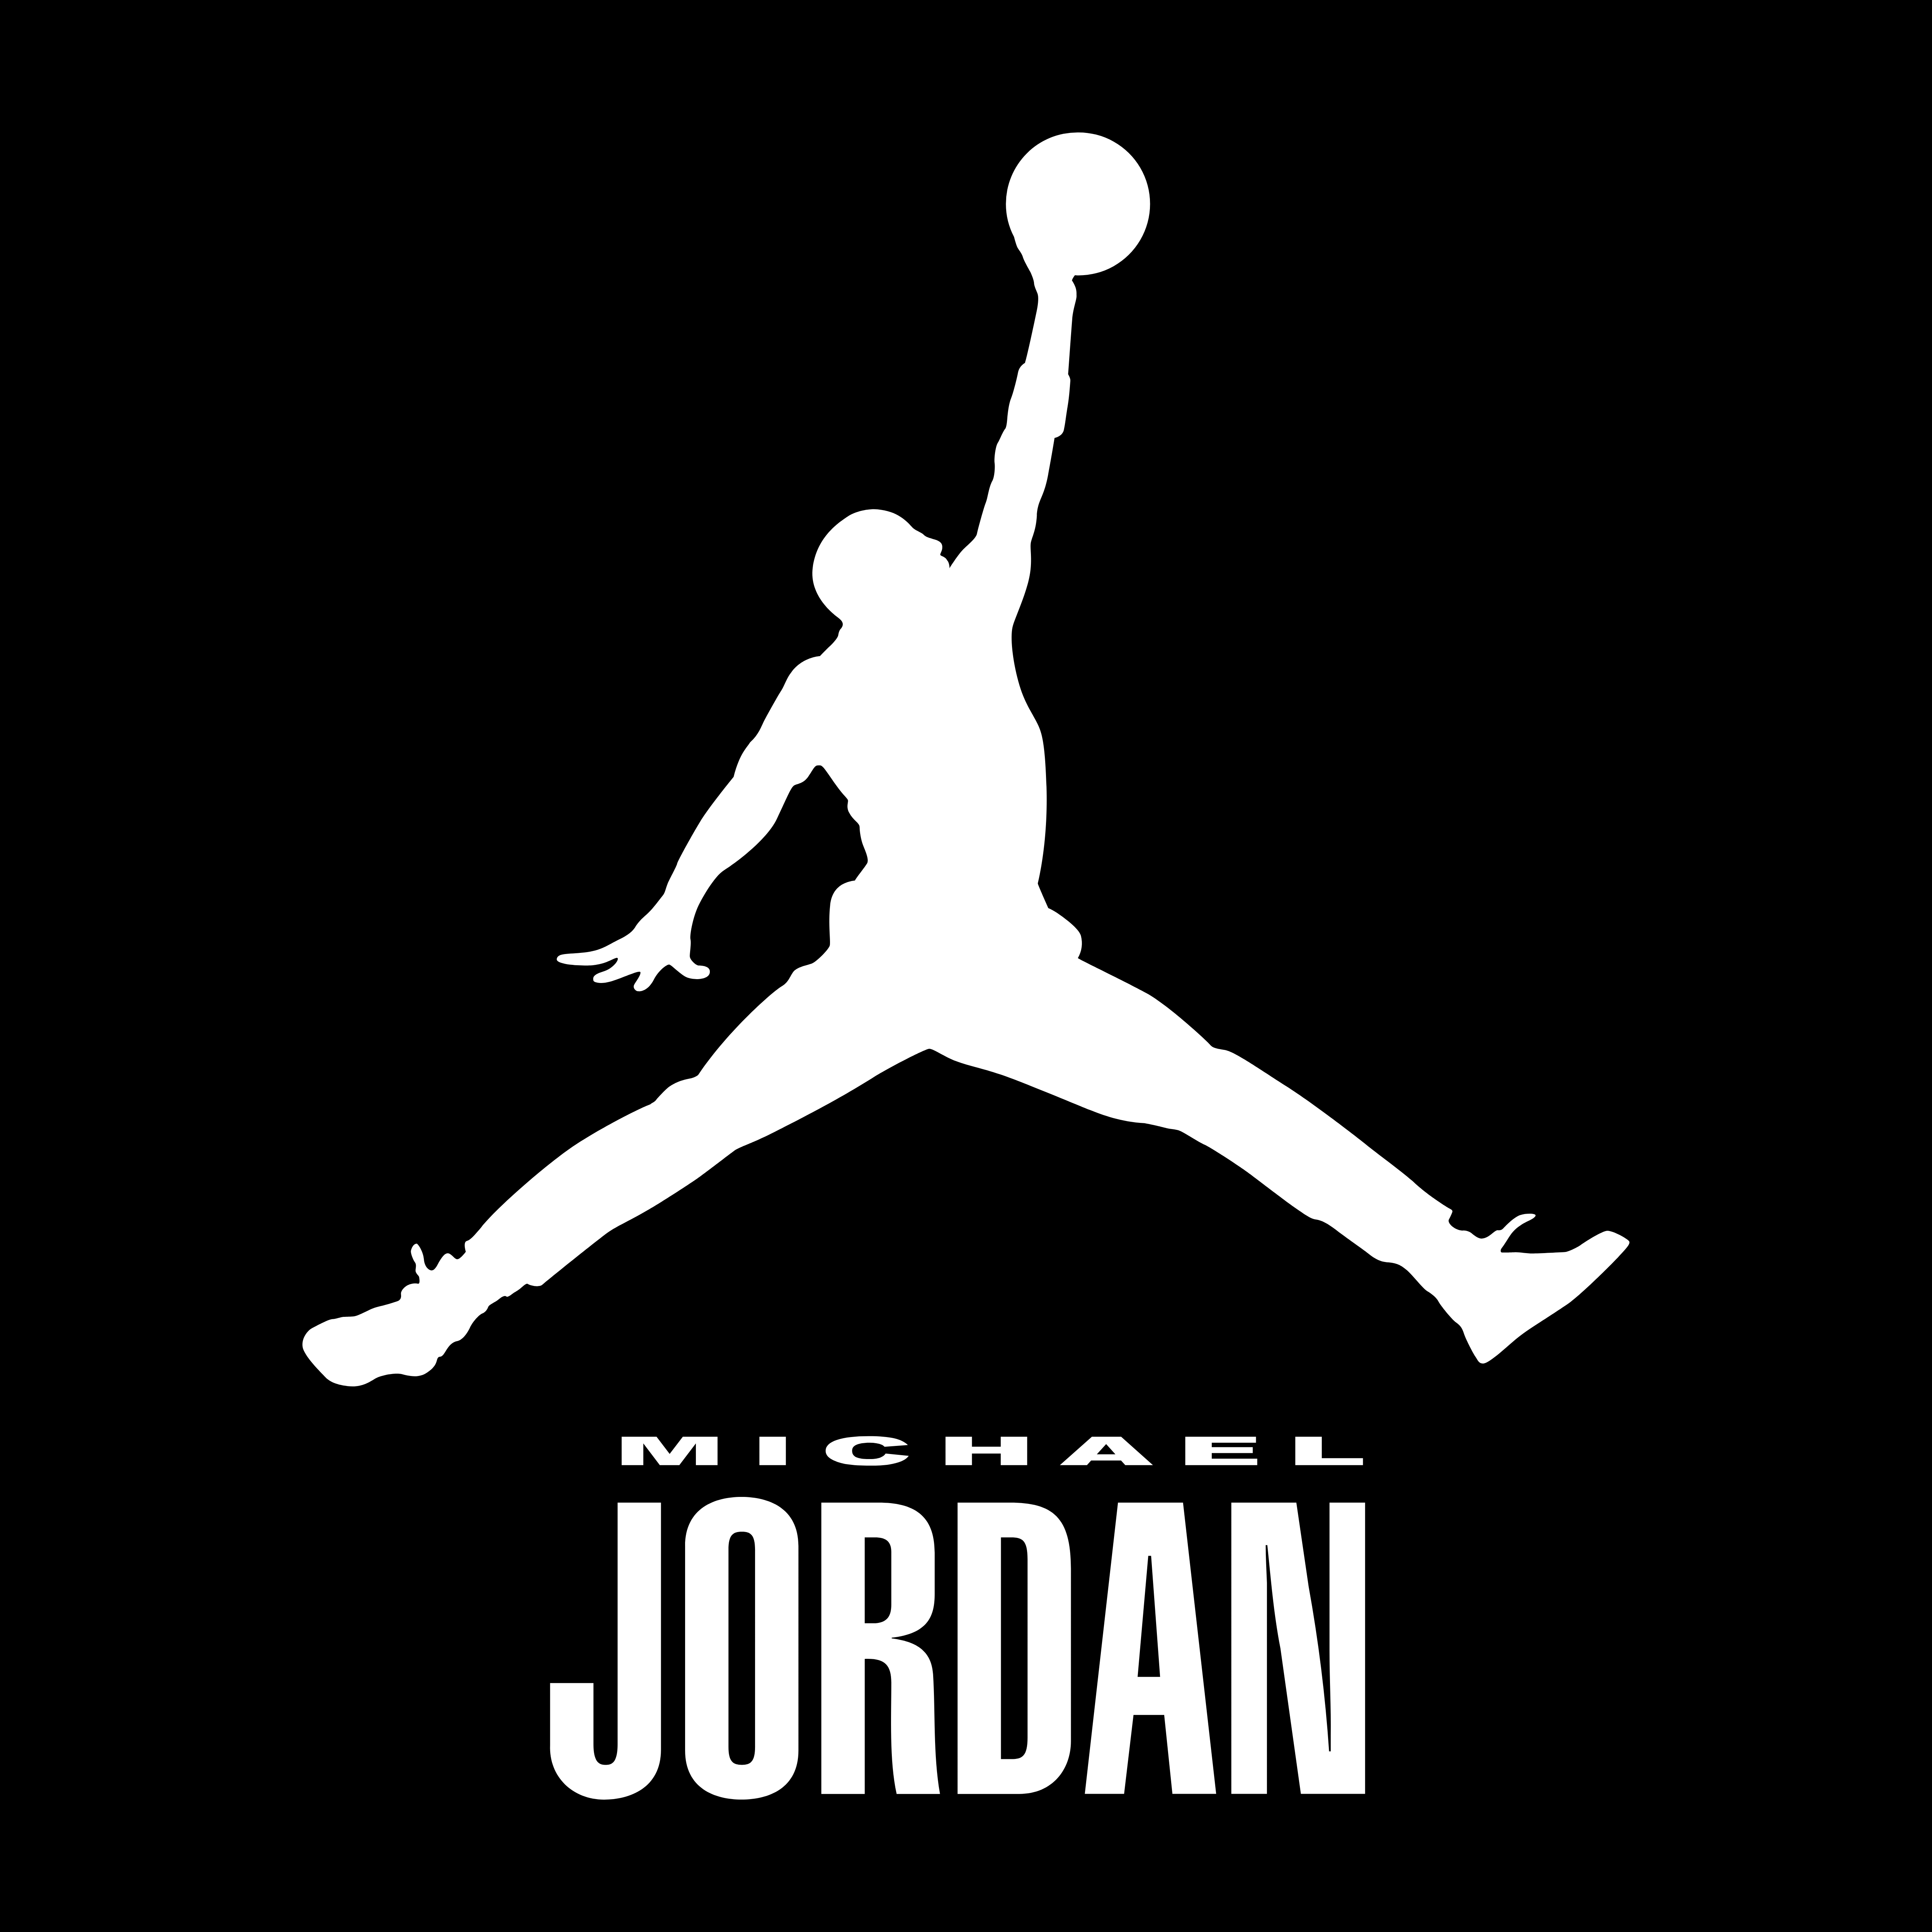 Jordan - Logos Download